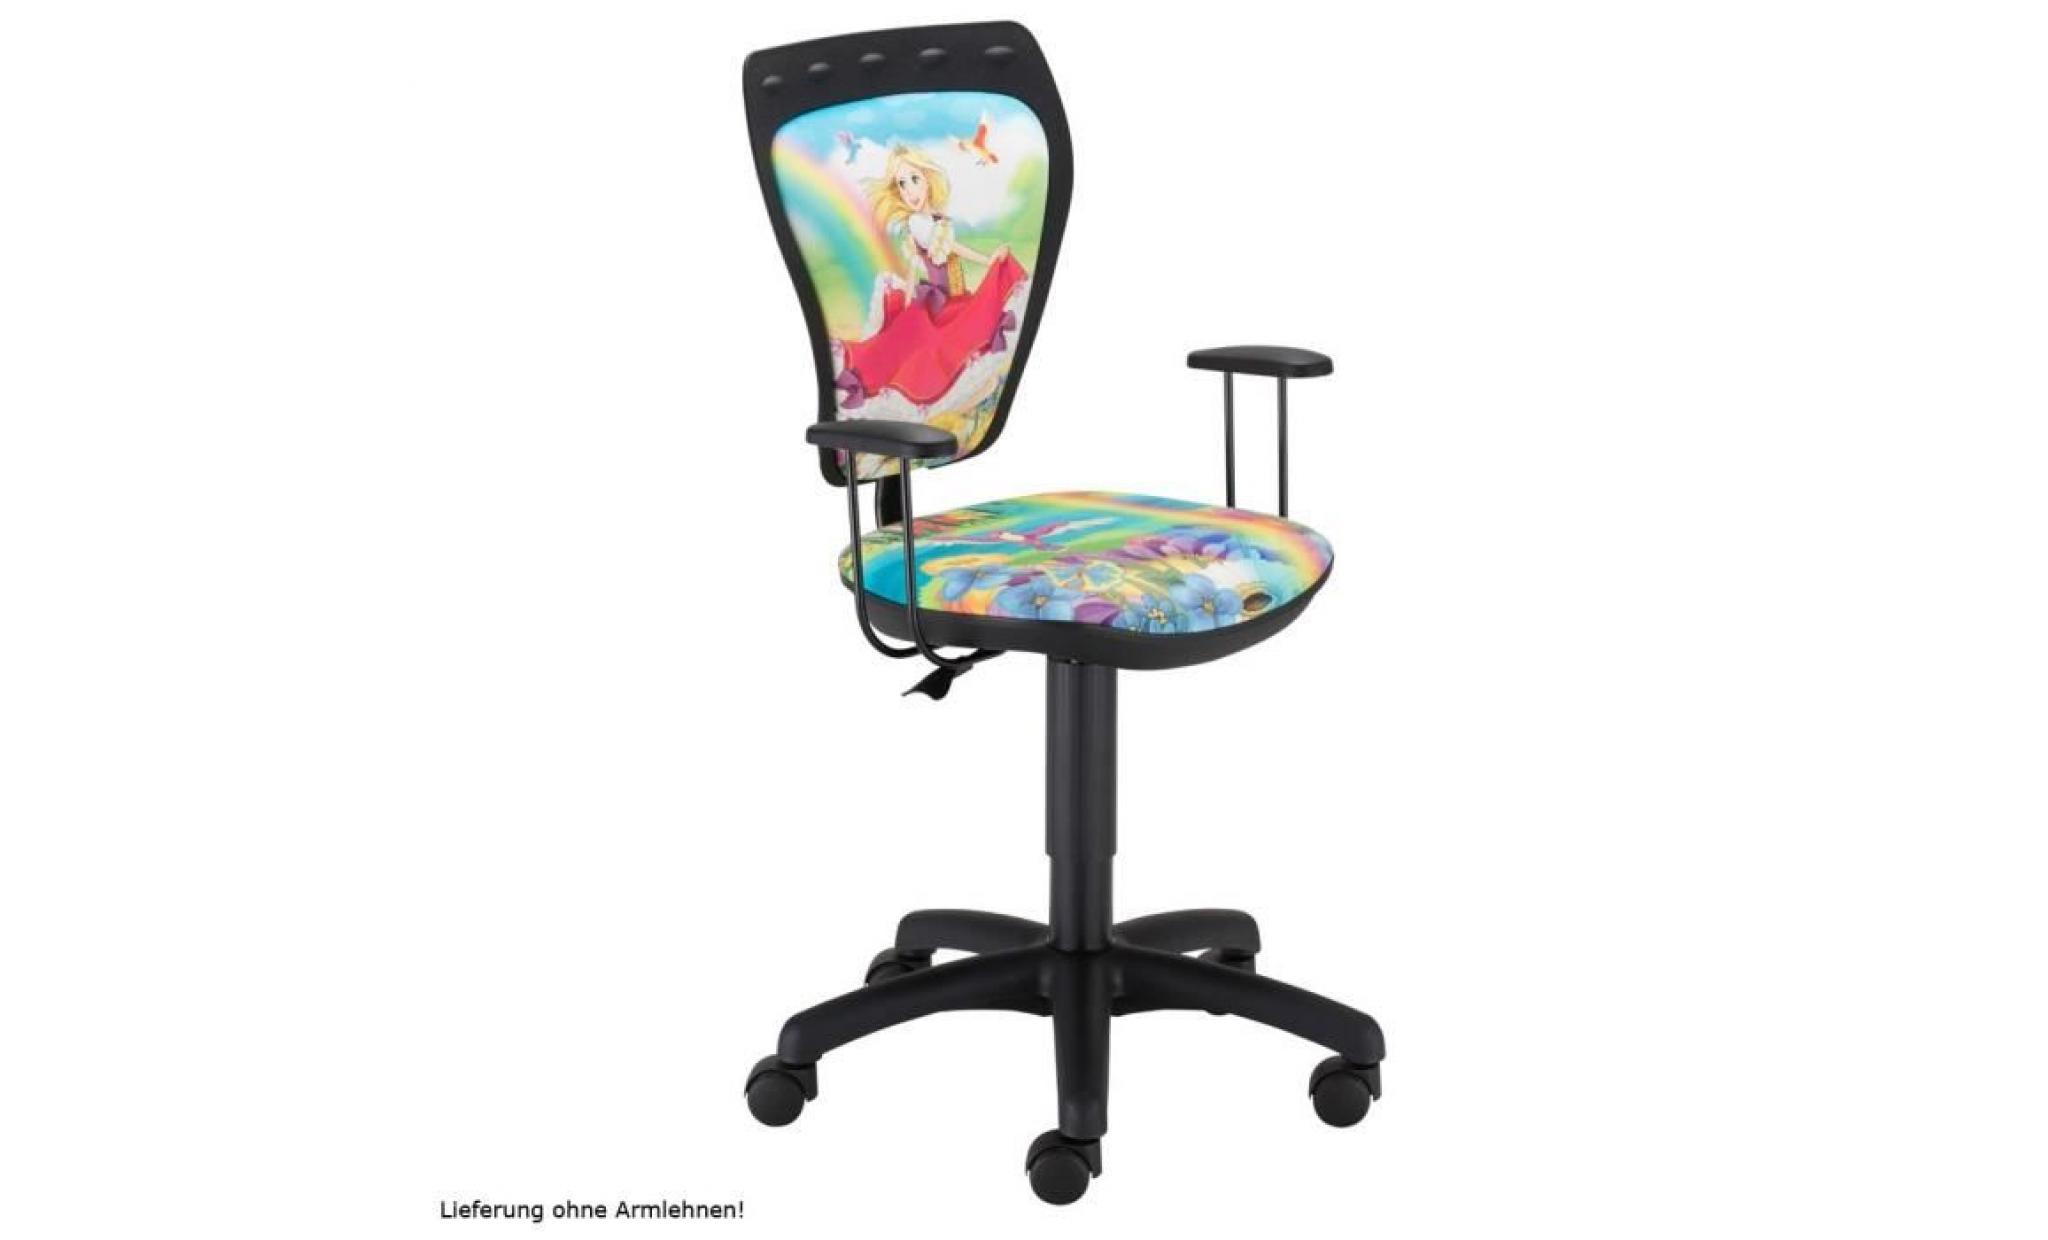 siège tournant chaise de bureau princesse enfants chambre coloré maison accoudoirs ts22 rts